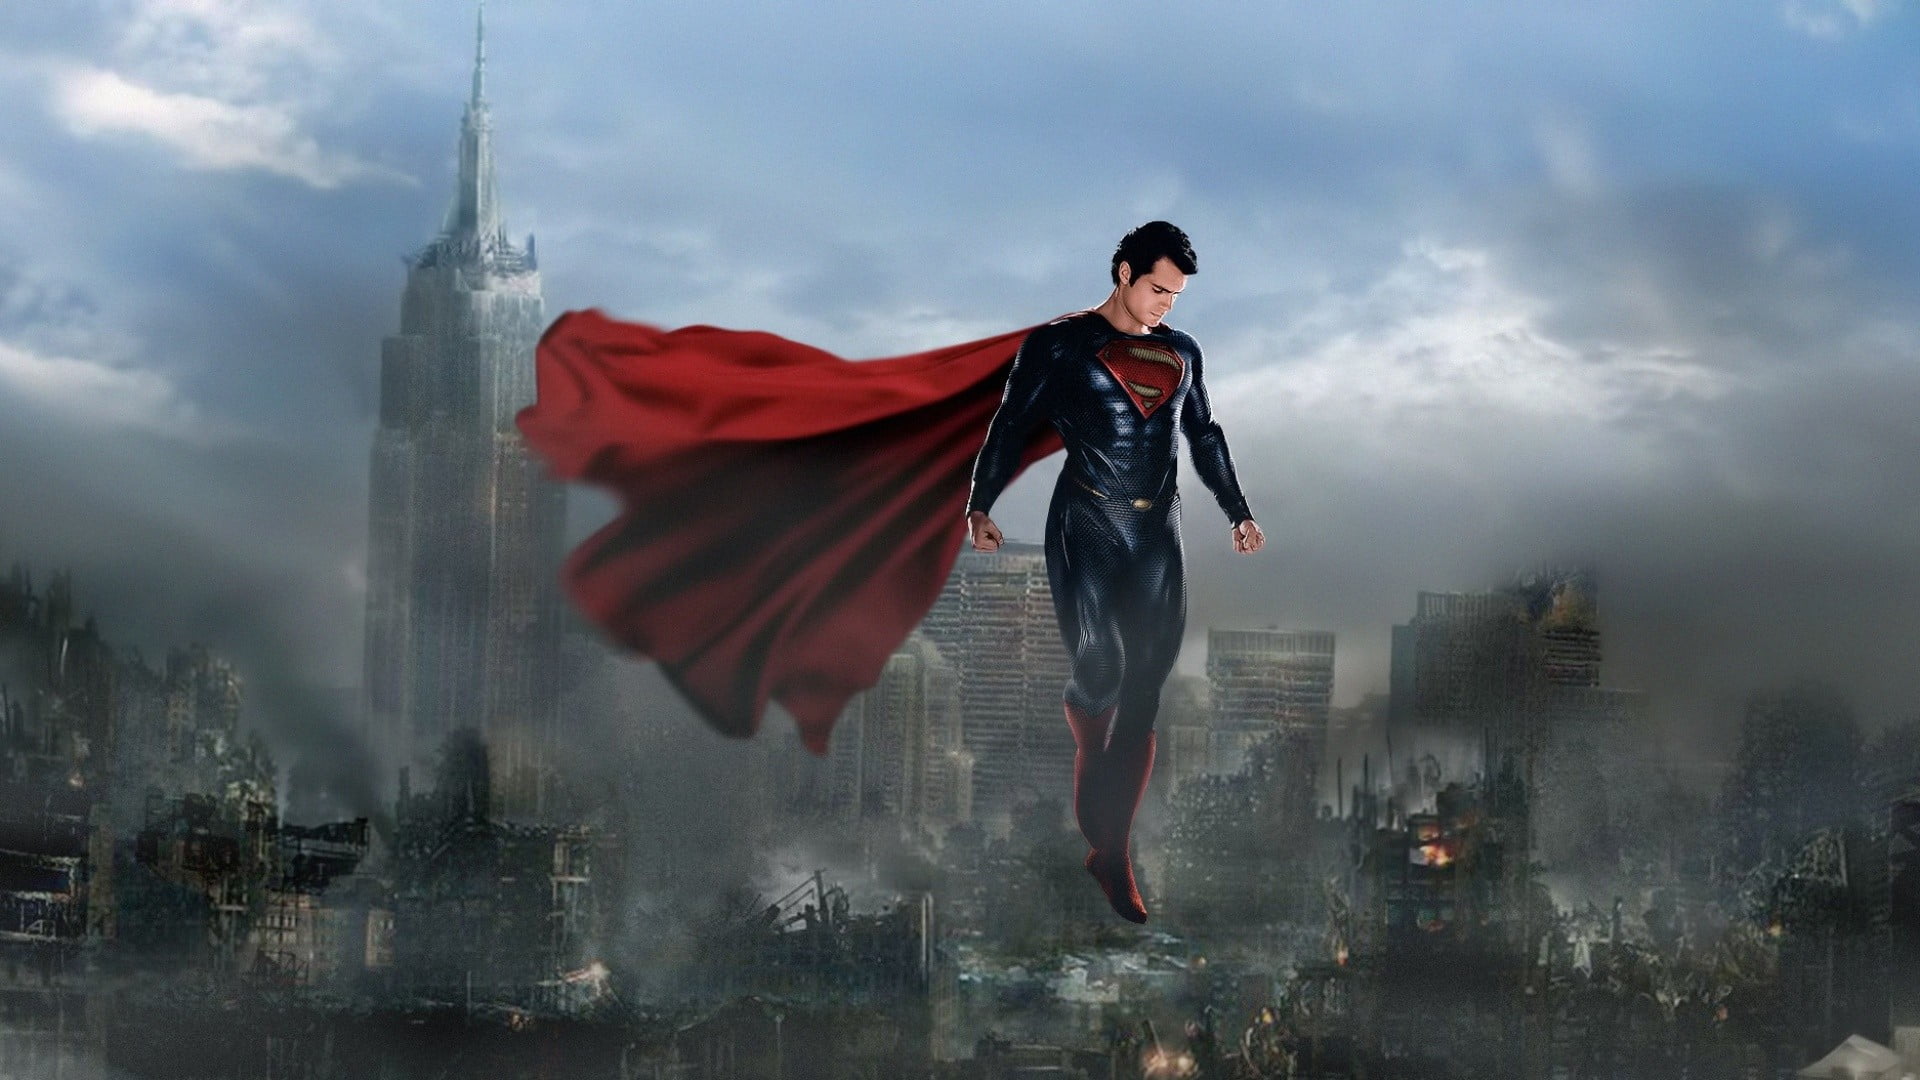 hombre de papel pintado de acero,superhombre,superhéroe,personaje de ficción,liga de la justicia,cg artwork